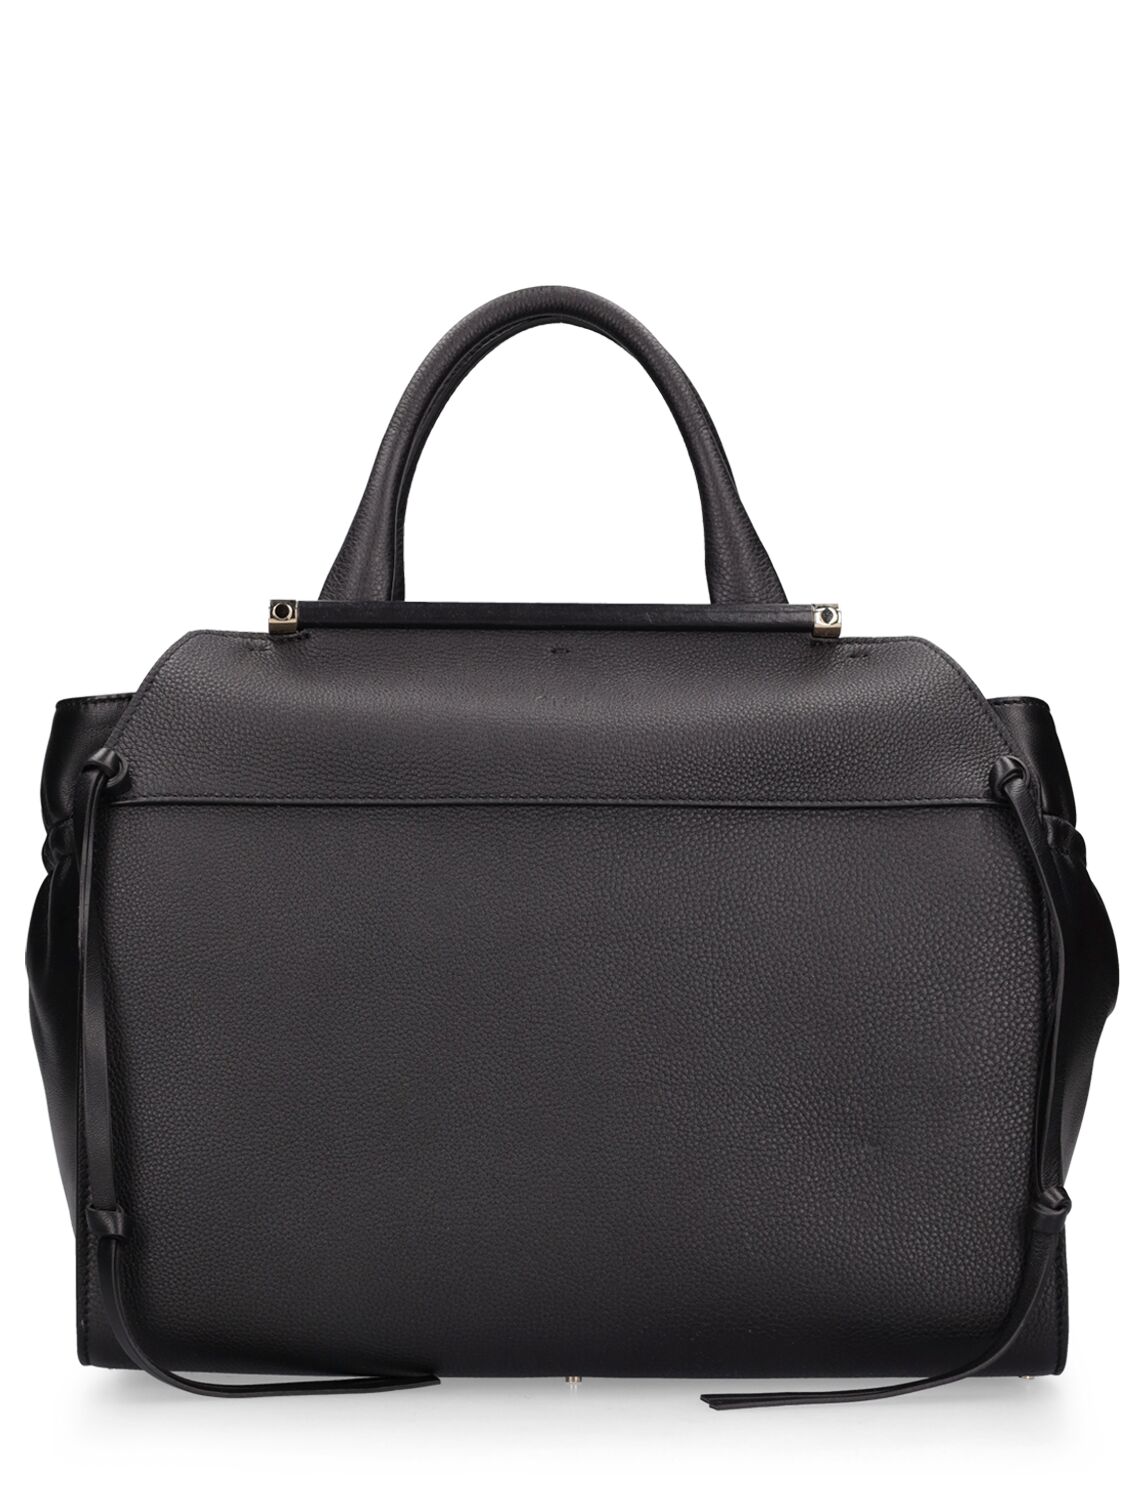 Steph Leather Top Handle Bag - CHLOÉ - Modalova